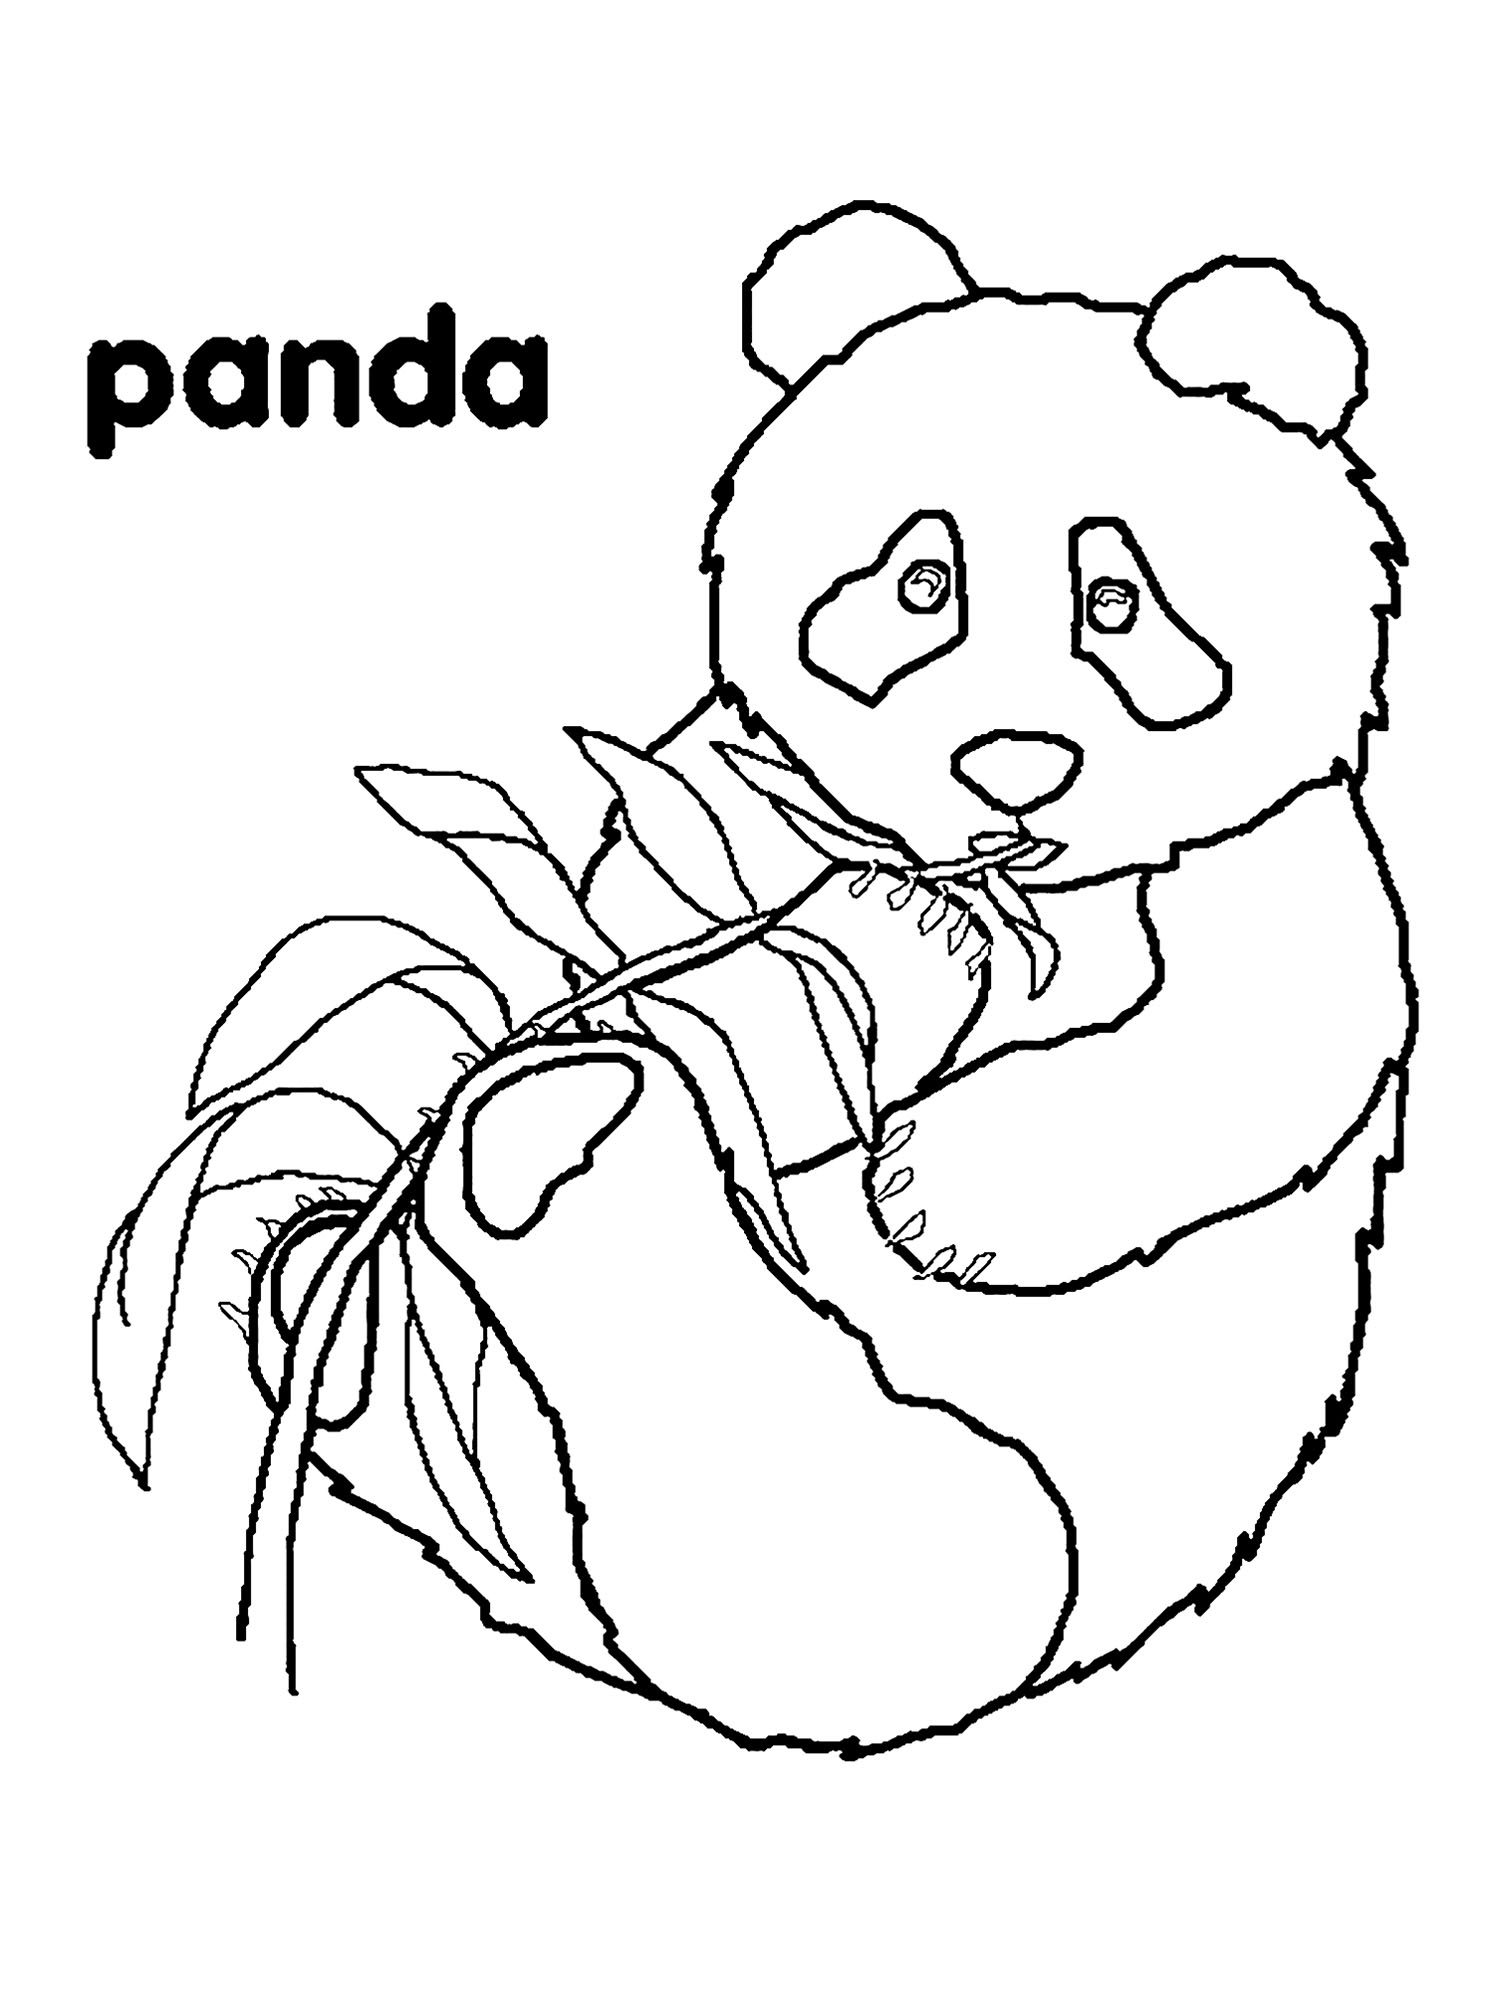 Panda Coloring Pages - Imprimível - Gratuito - Centro de Desenho Infantil